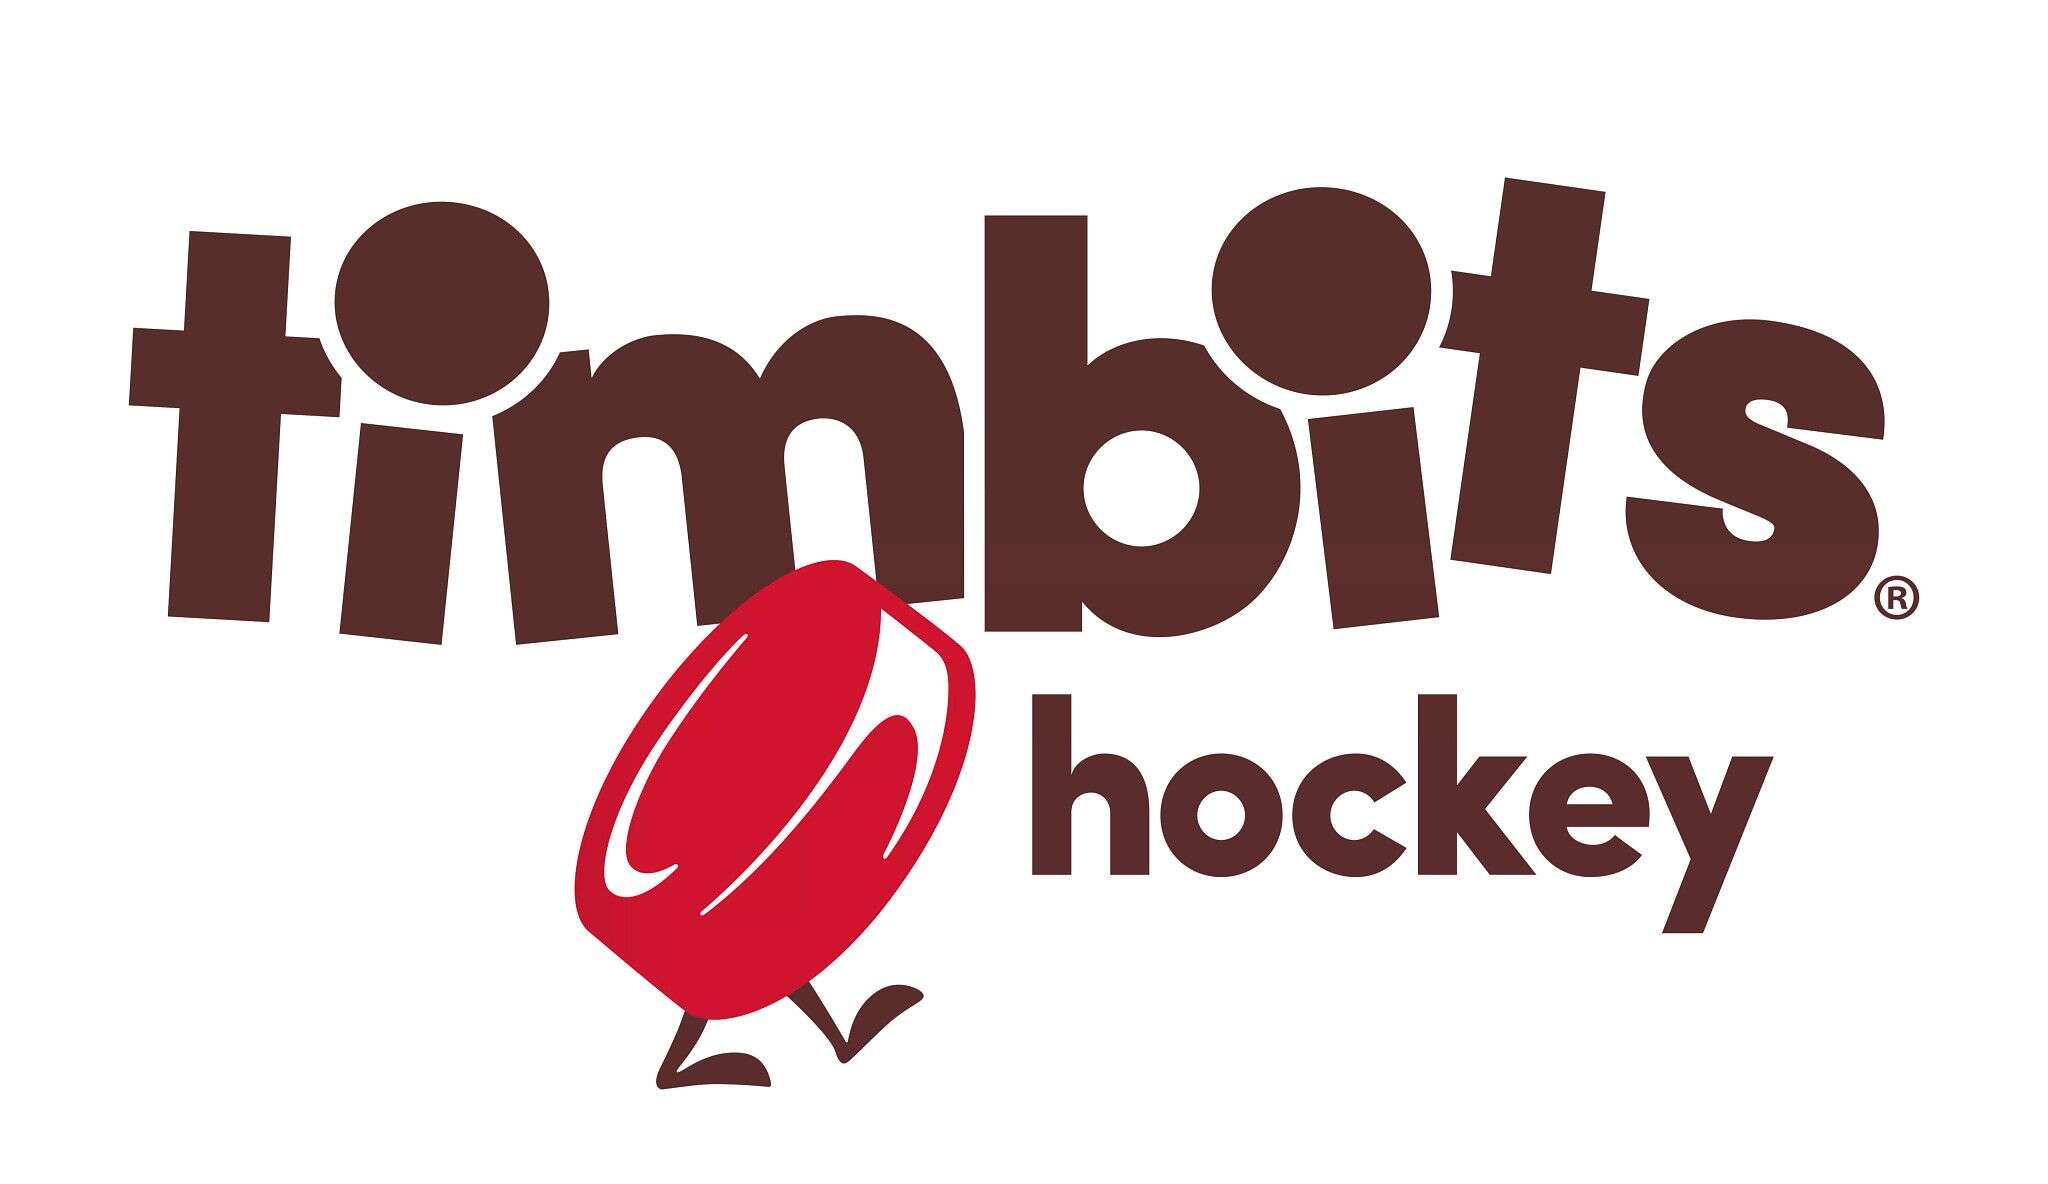 Tim bits hockey